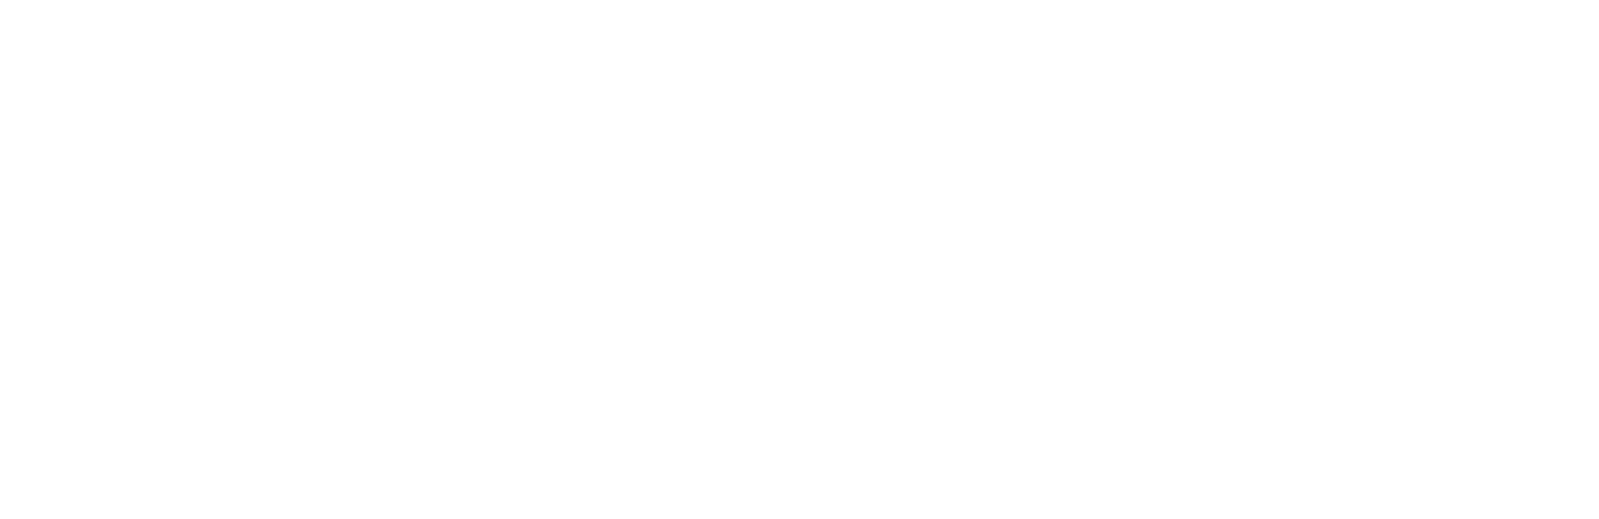 Visa logo for dark backgrounds (transparent PNG)